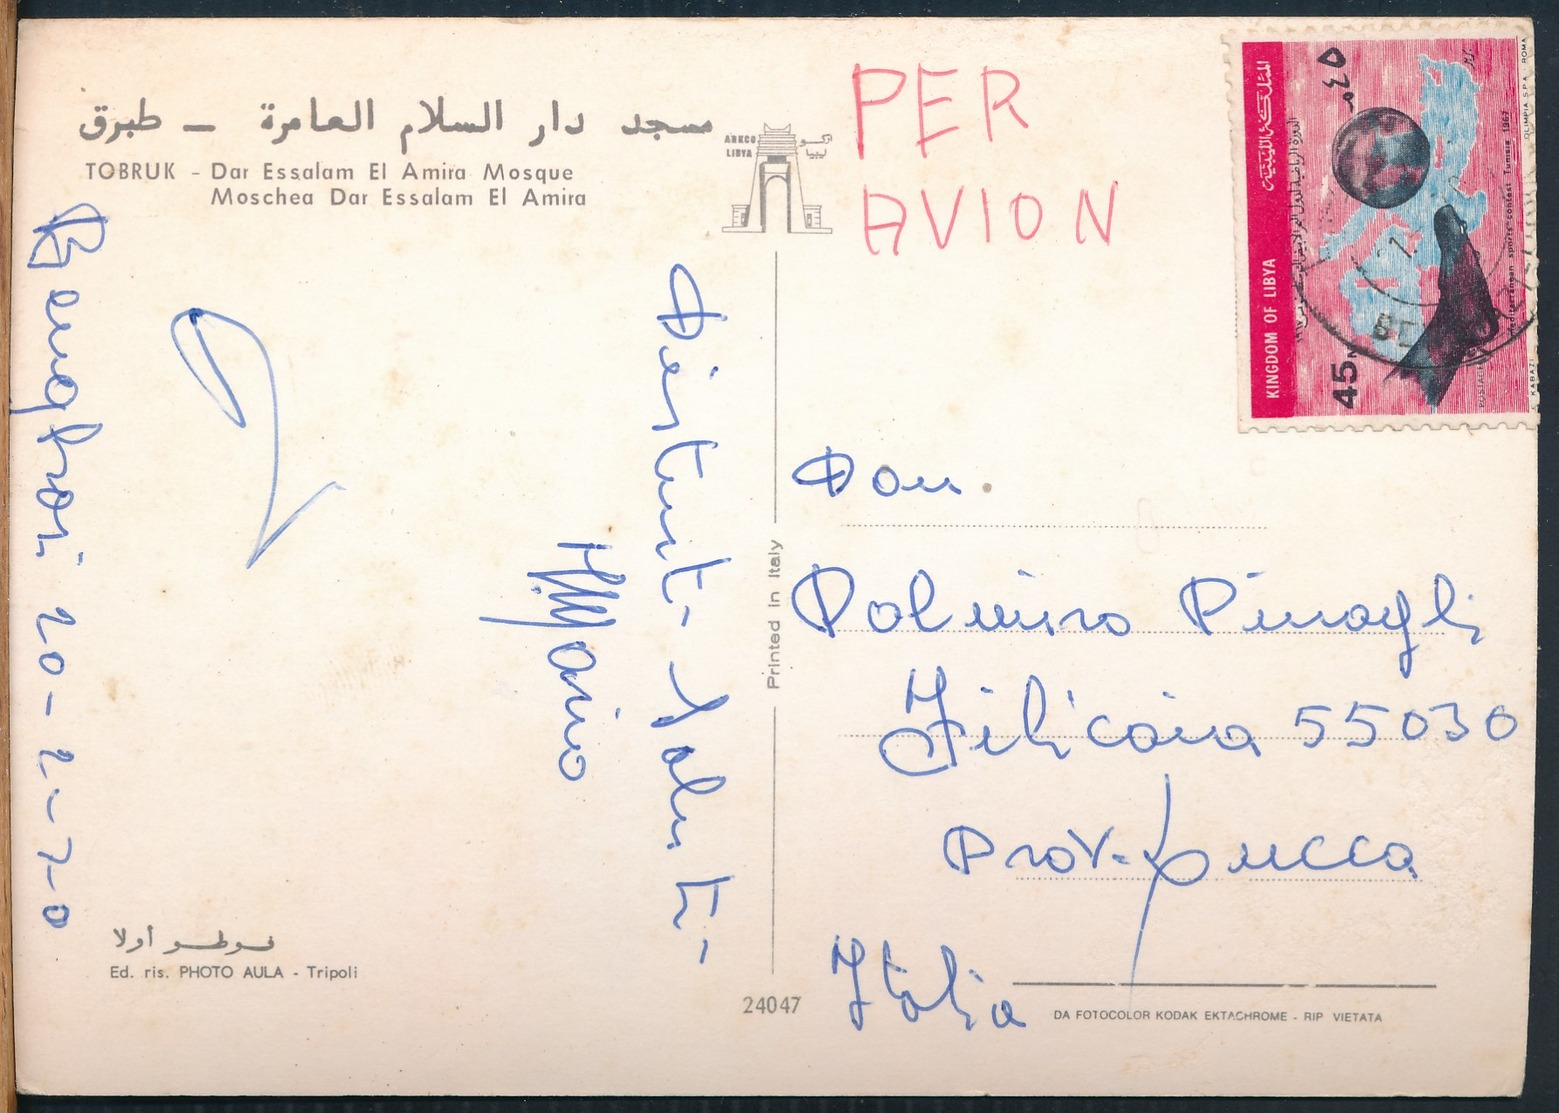 °°° 14800 - LIBYA - TOBRUK - DAR ESSALAM EL AMIRA MOSQUE - 1970 With Stamps °°° - Libië